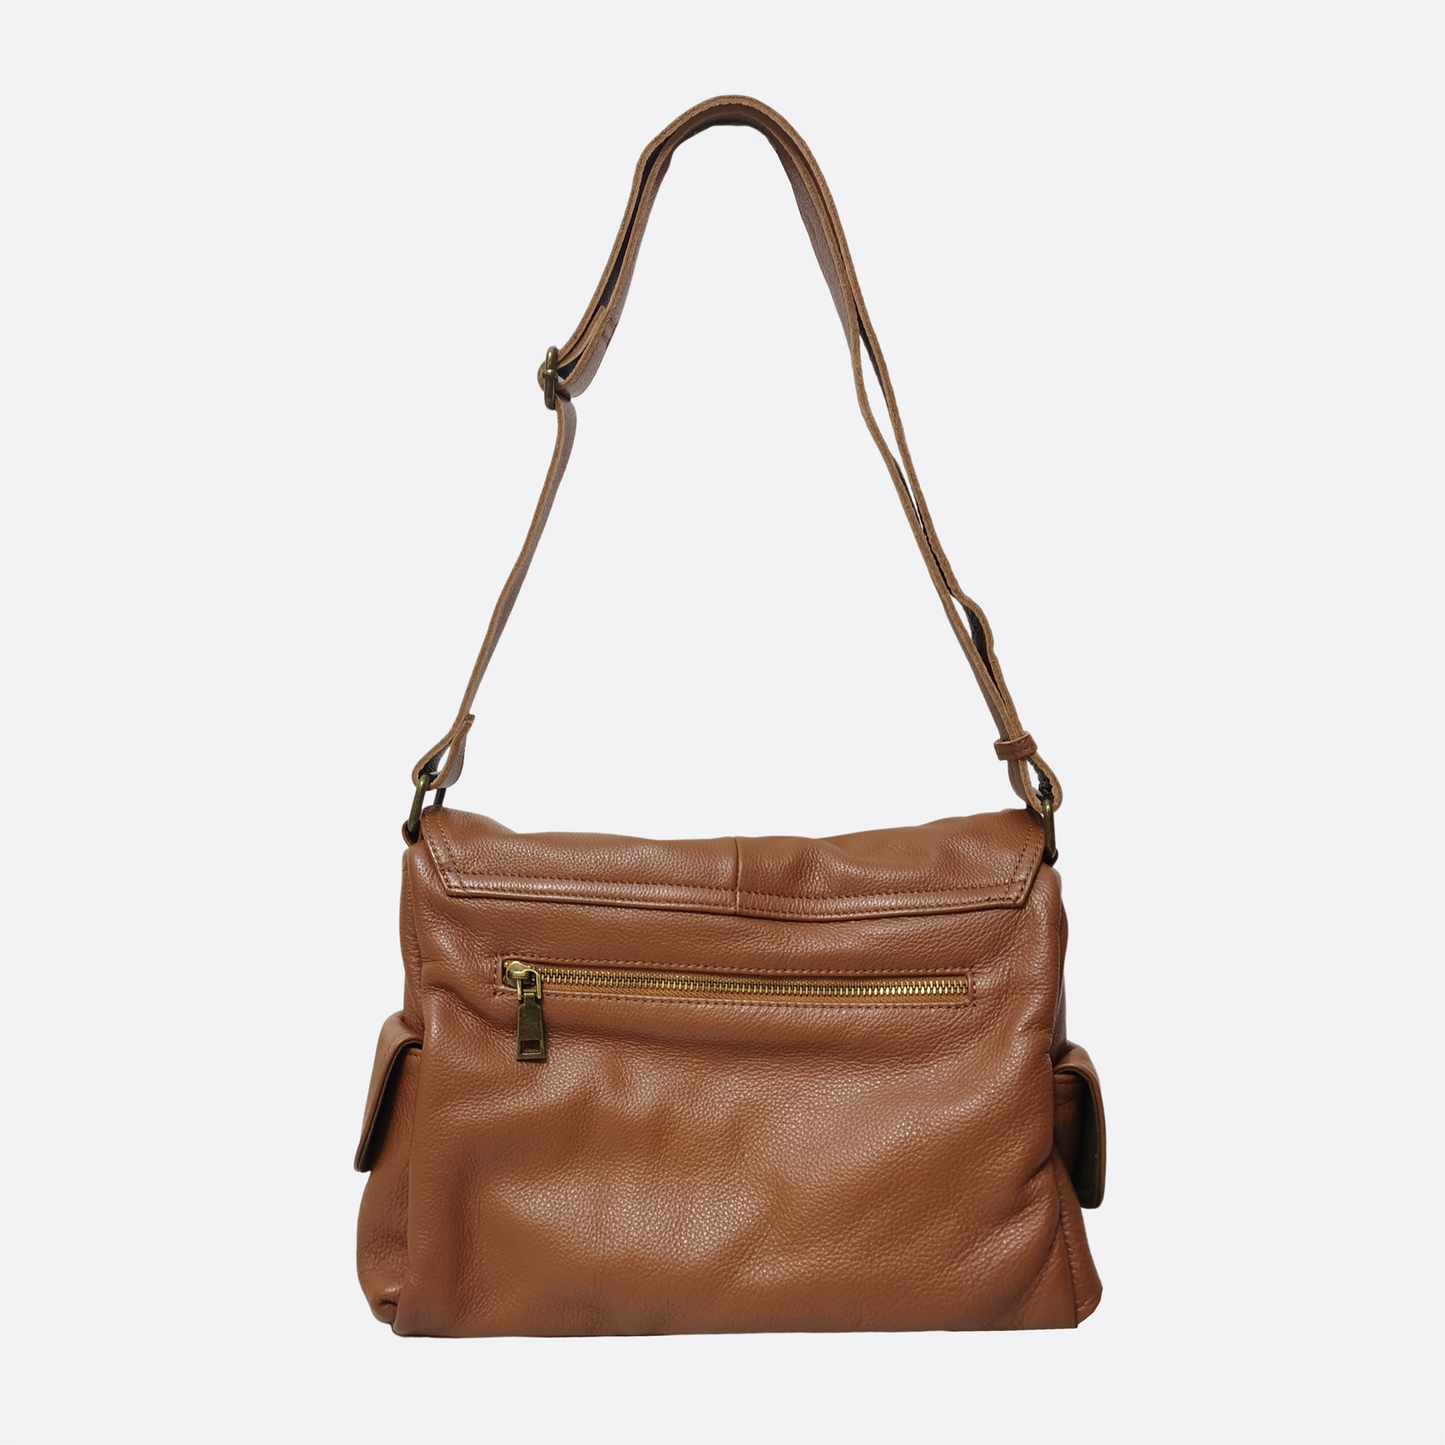 Unisex genuine cowhide leather satchel messenger V2 sling bag handbag